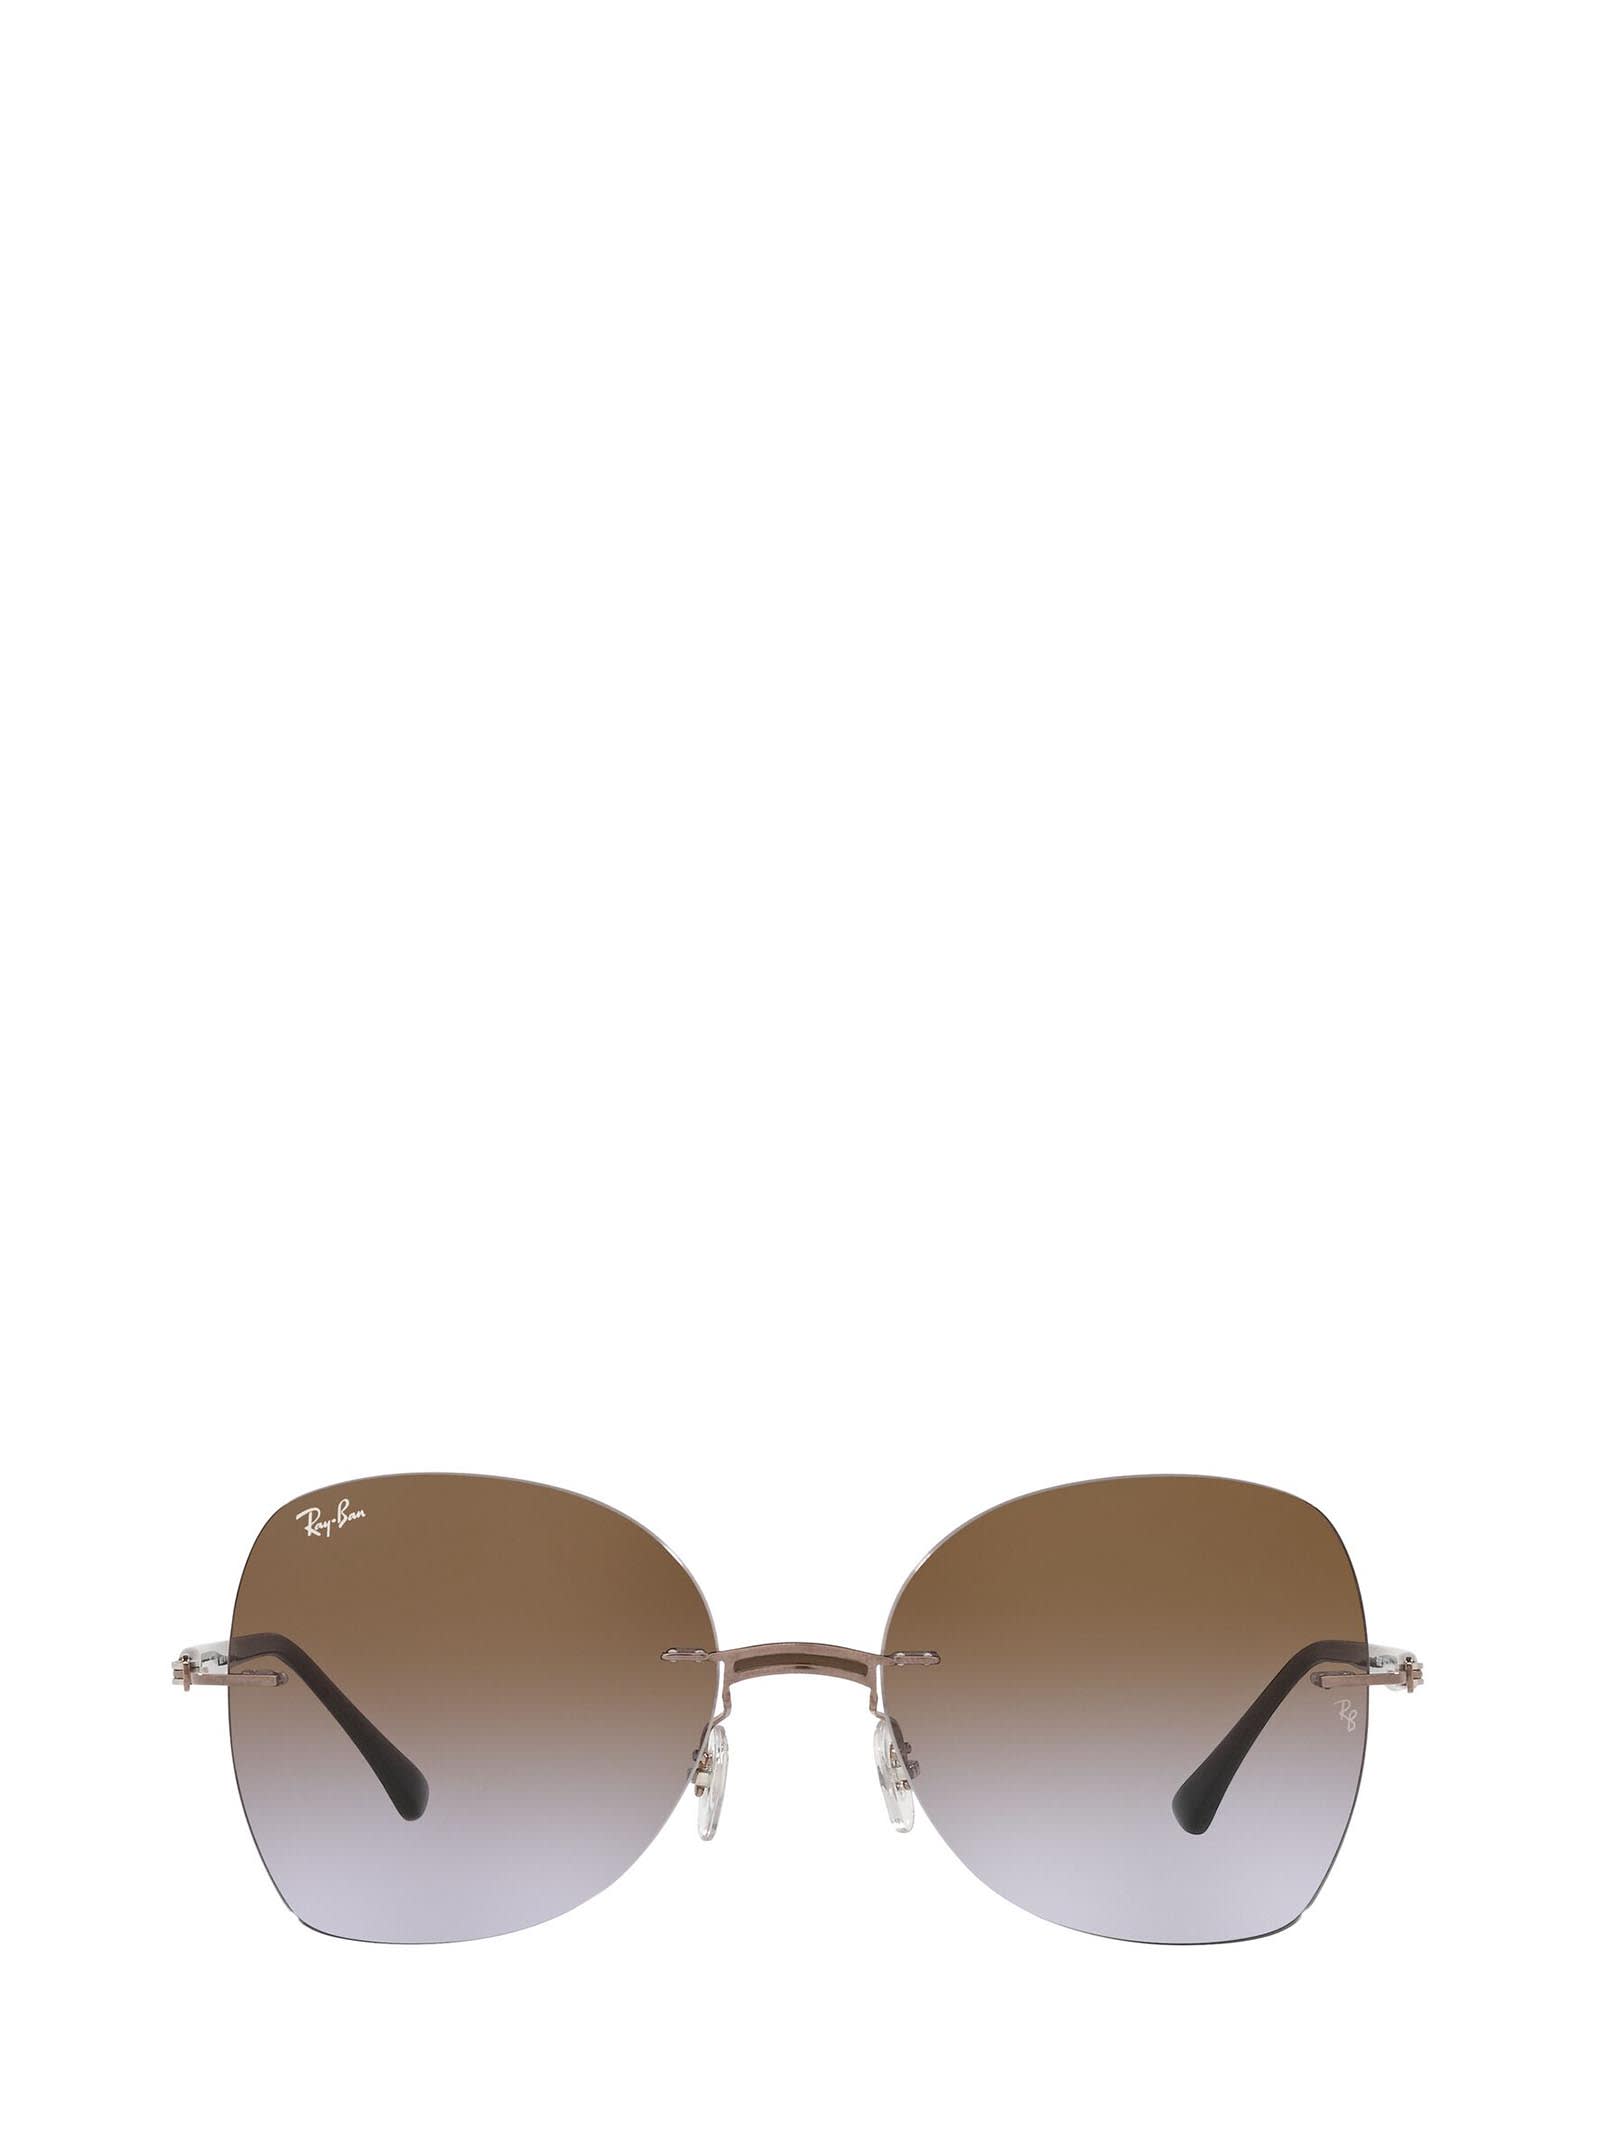 Ray-Ban Ray-ban Rb8066 Brown On Light Brown Sunglasses